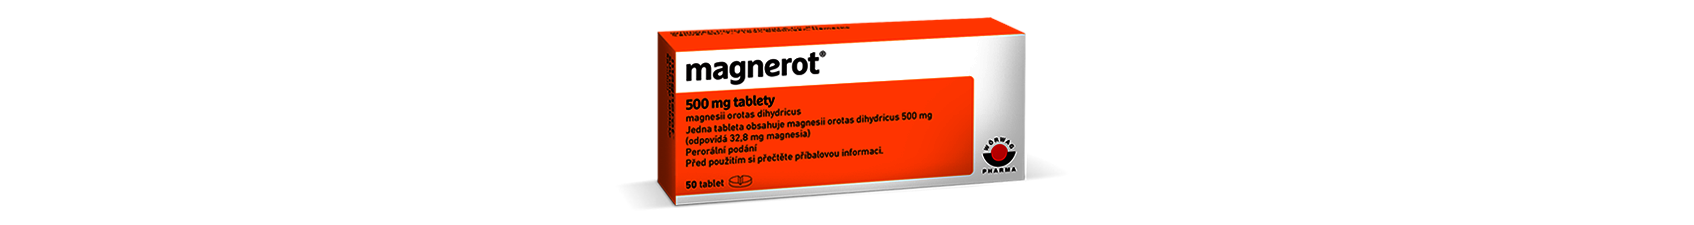 Magnerot - magnezium (horčík) v oranžové krabičce. Přípravek obsahující hořčík